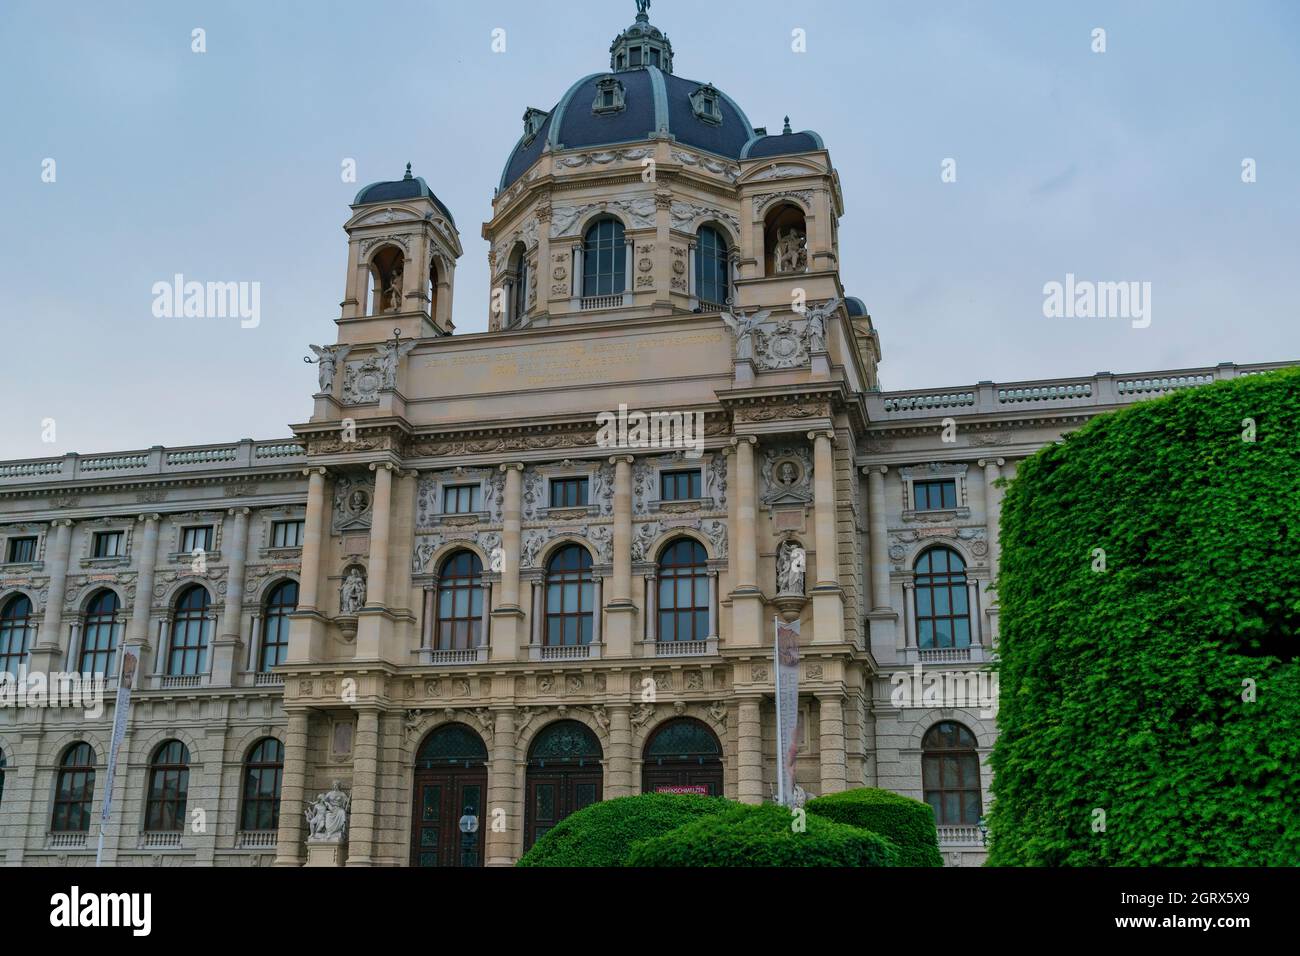 30 mai 2019 Vienne, Autriche - Musée Kunsthorisches de Vienne (Musée des beaux-arts) ciel nuageux Banque D'Images